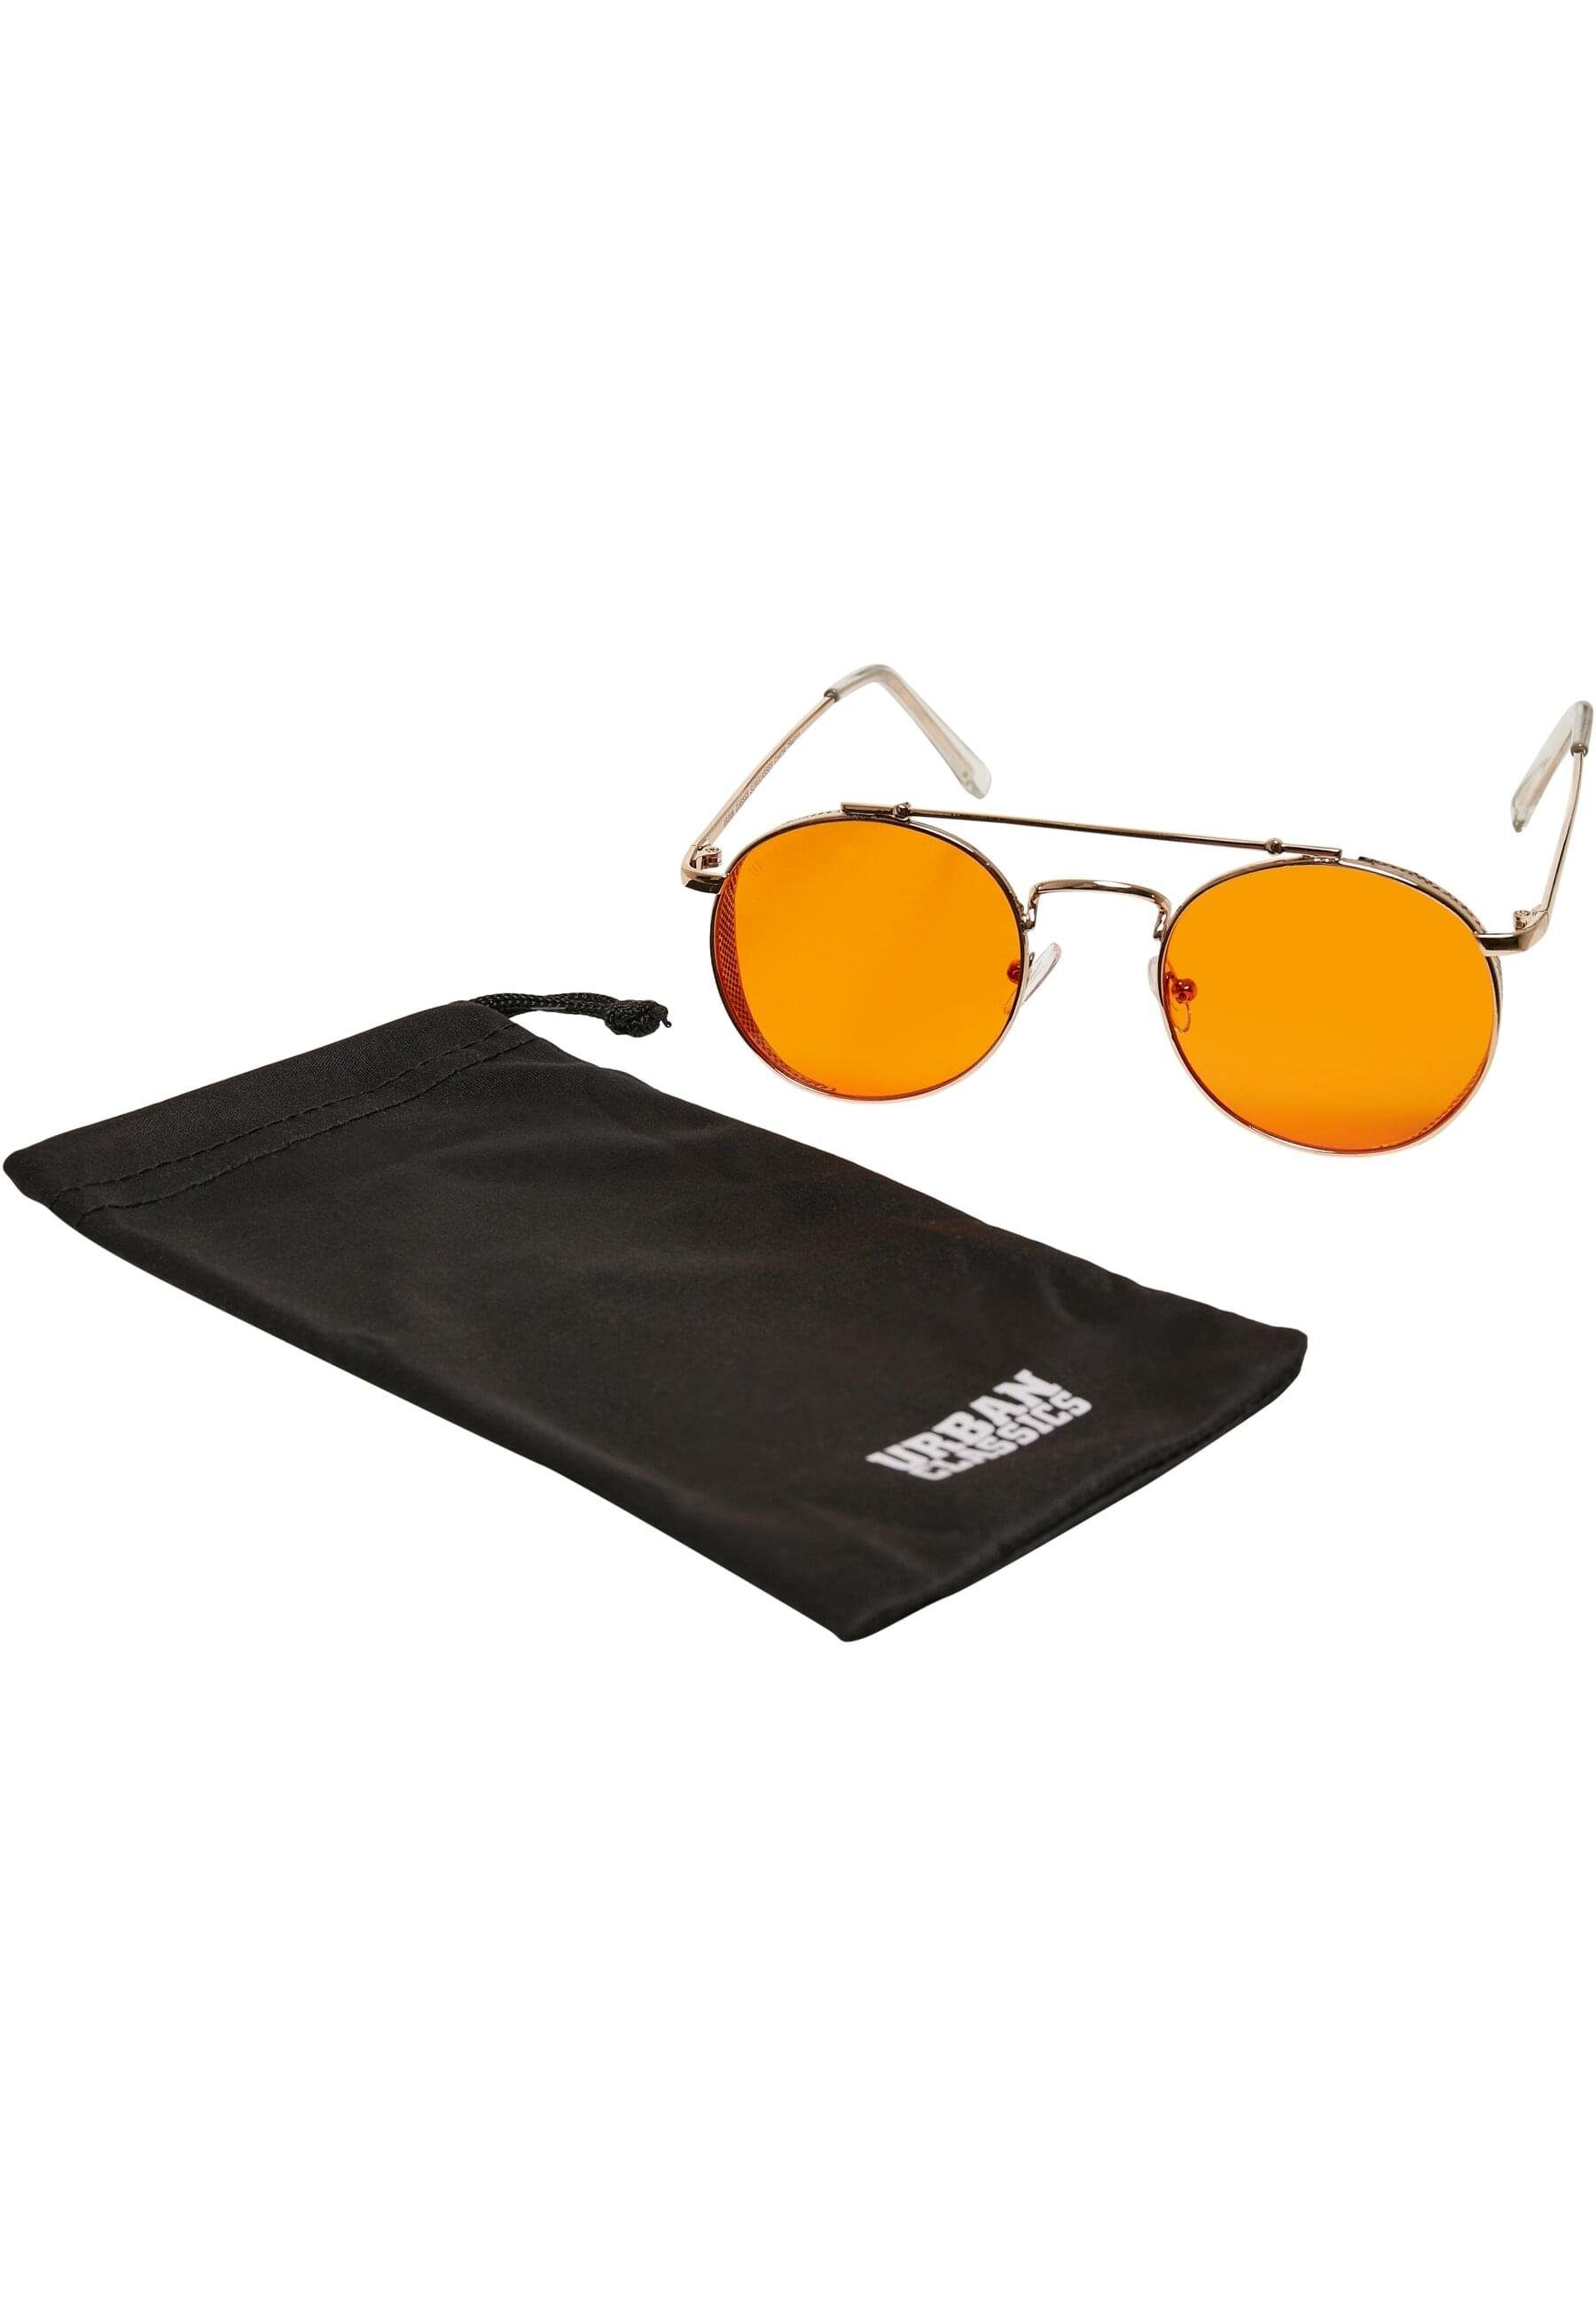 Sunglasses Unisex Sonnenbrille CLASSICS gold/orange URBAN Chios